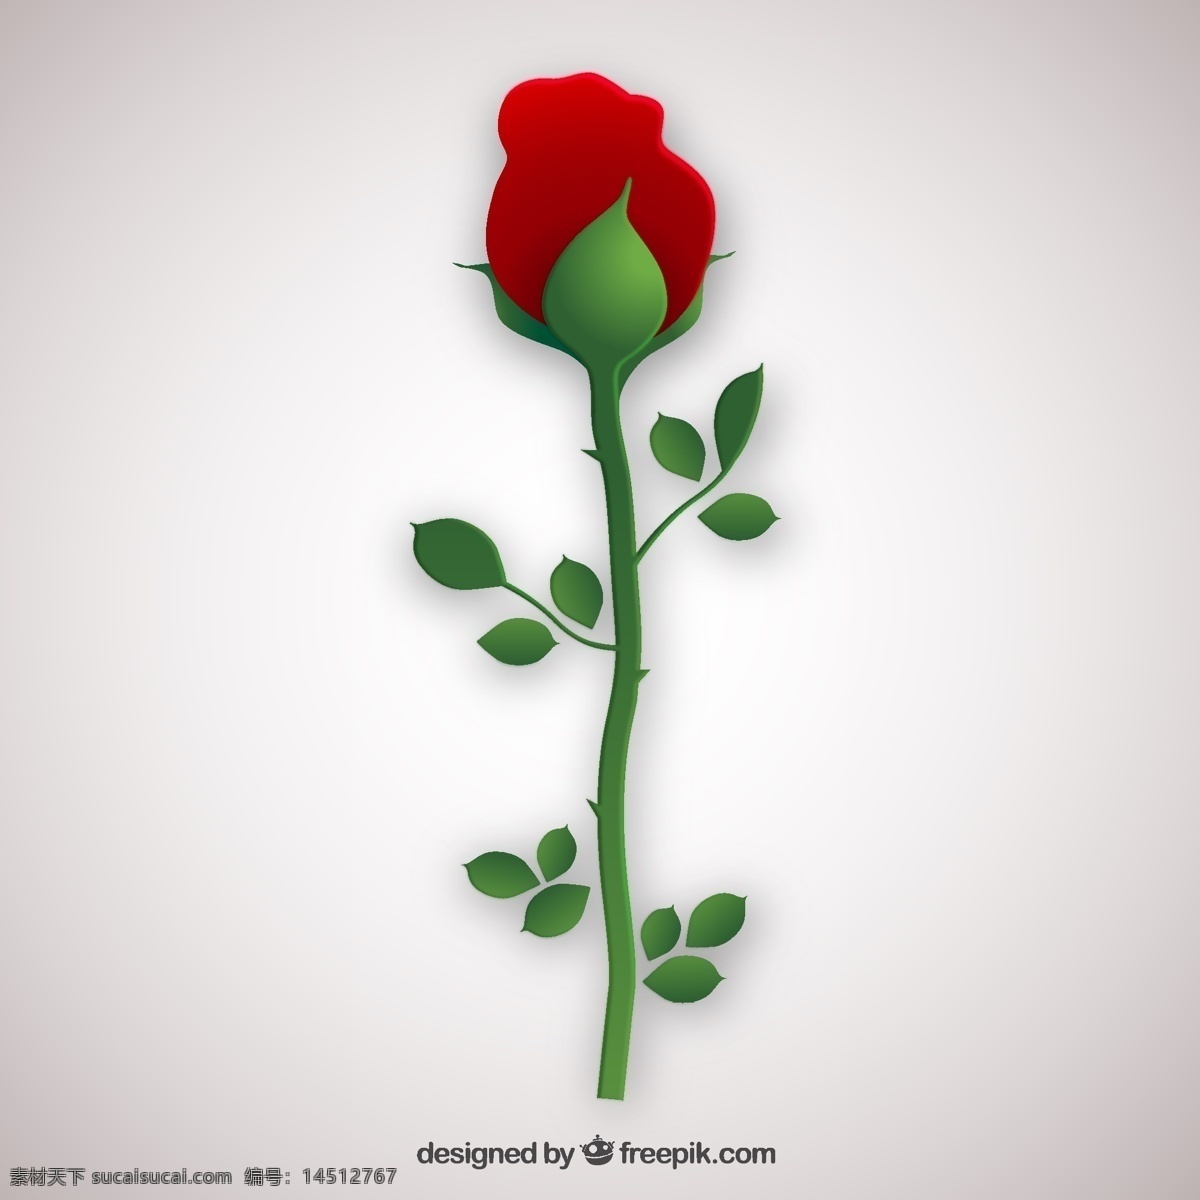 情人节玫瑰花 花卉 自然 春天 玫瑰 情人节 红色 地势平坦 植物 平面设计 鲜花 绽放